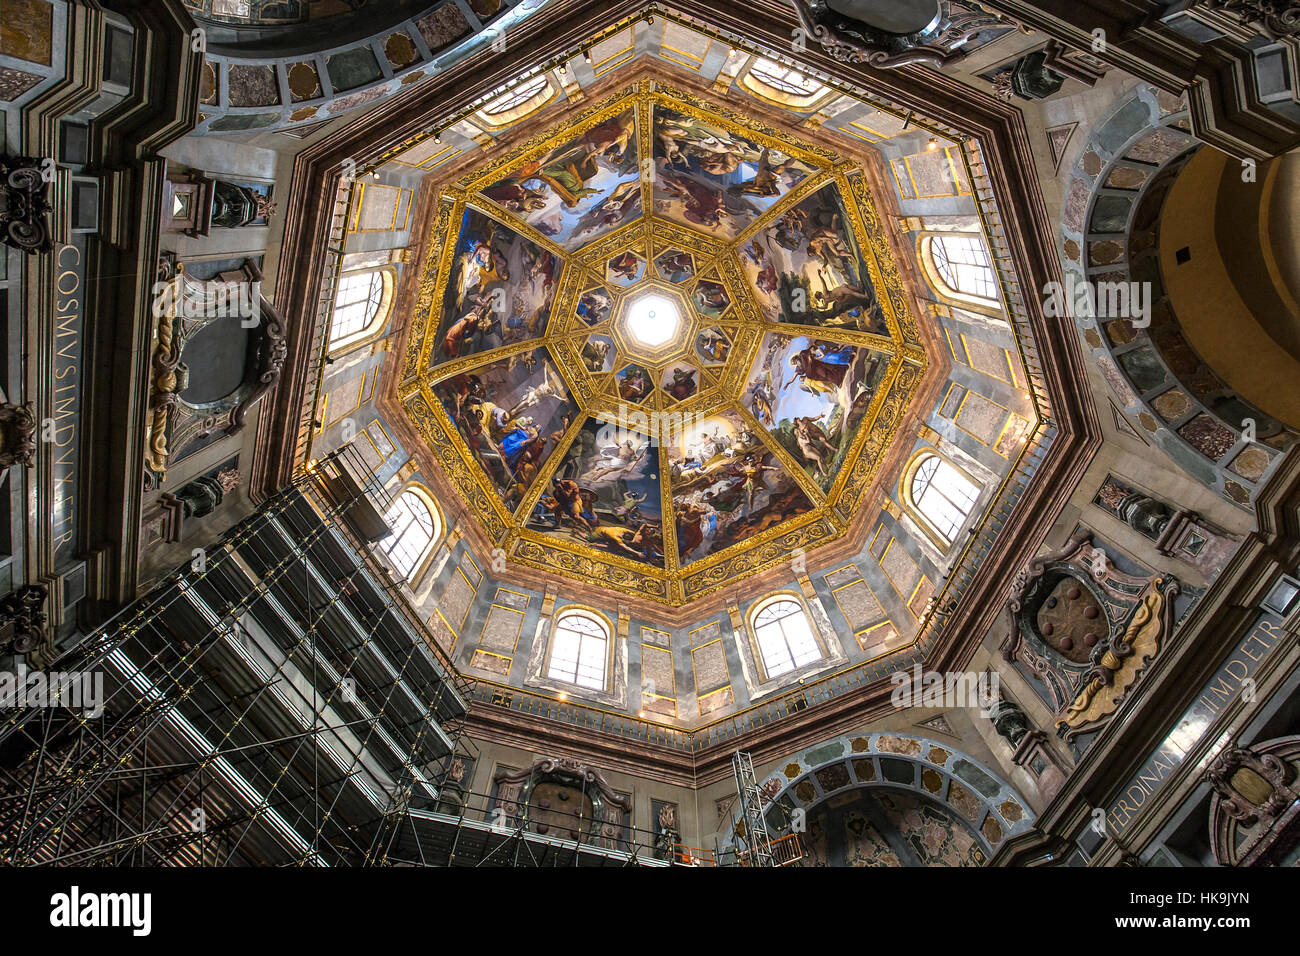 Florencia, Italia, 27 de octubre de 2015 : los interiores y detalles arquitectónicos de la capilla Medici, 27 de octubre de 2015 en Florencia, Italia. Foto de stock